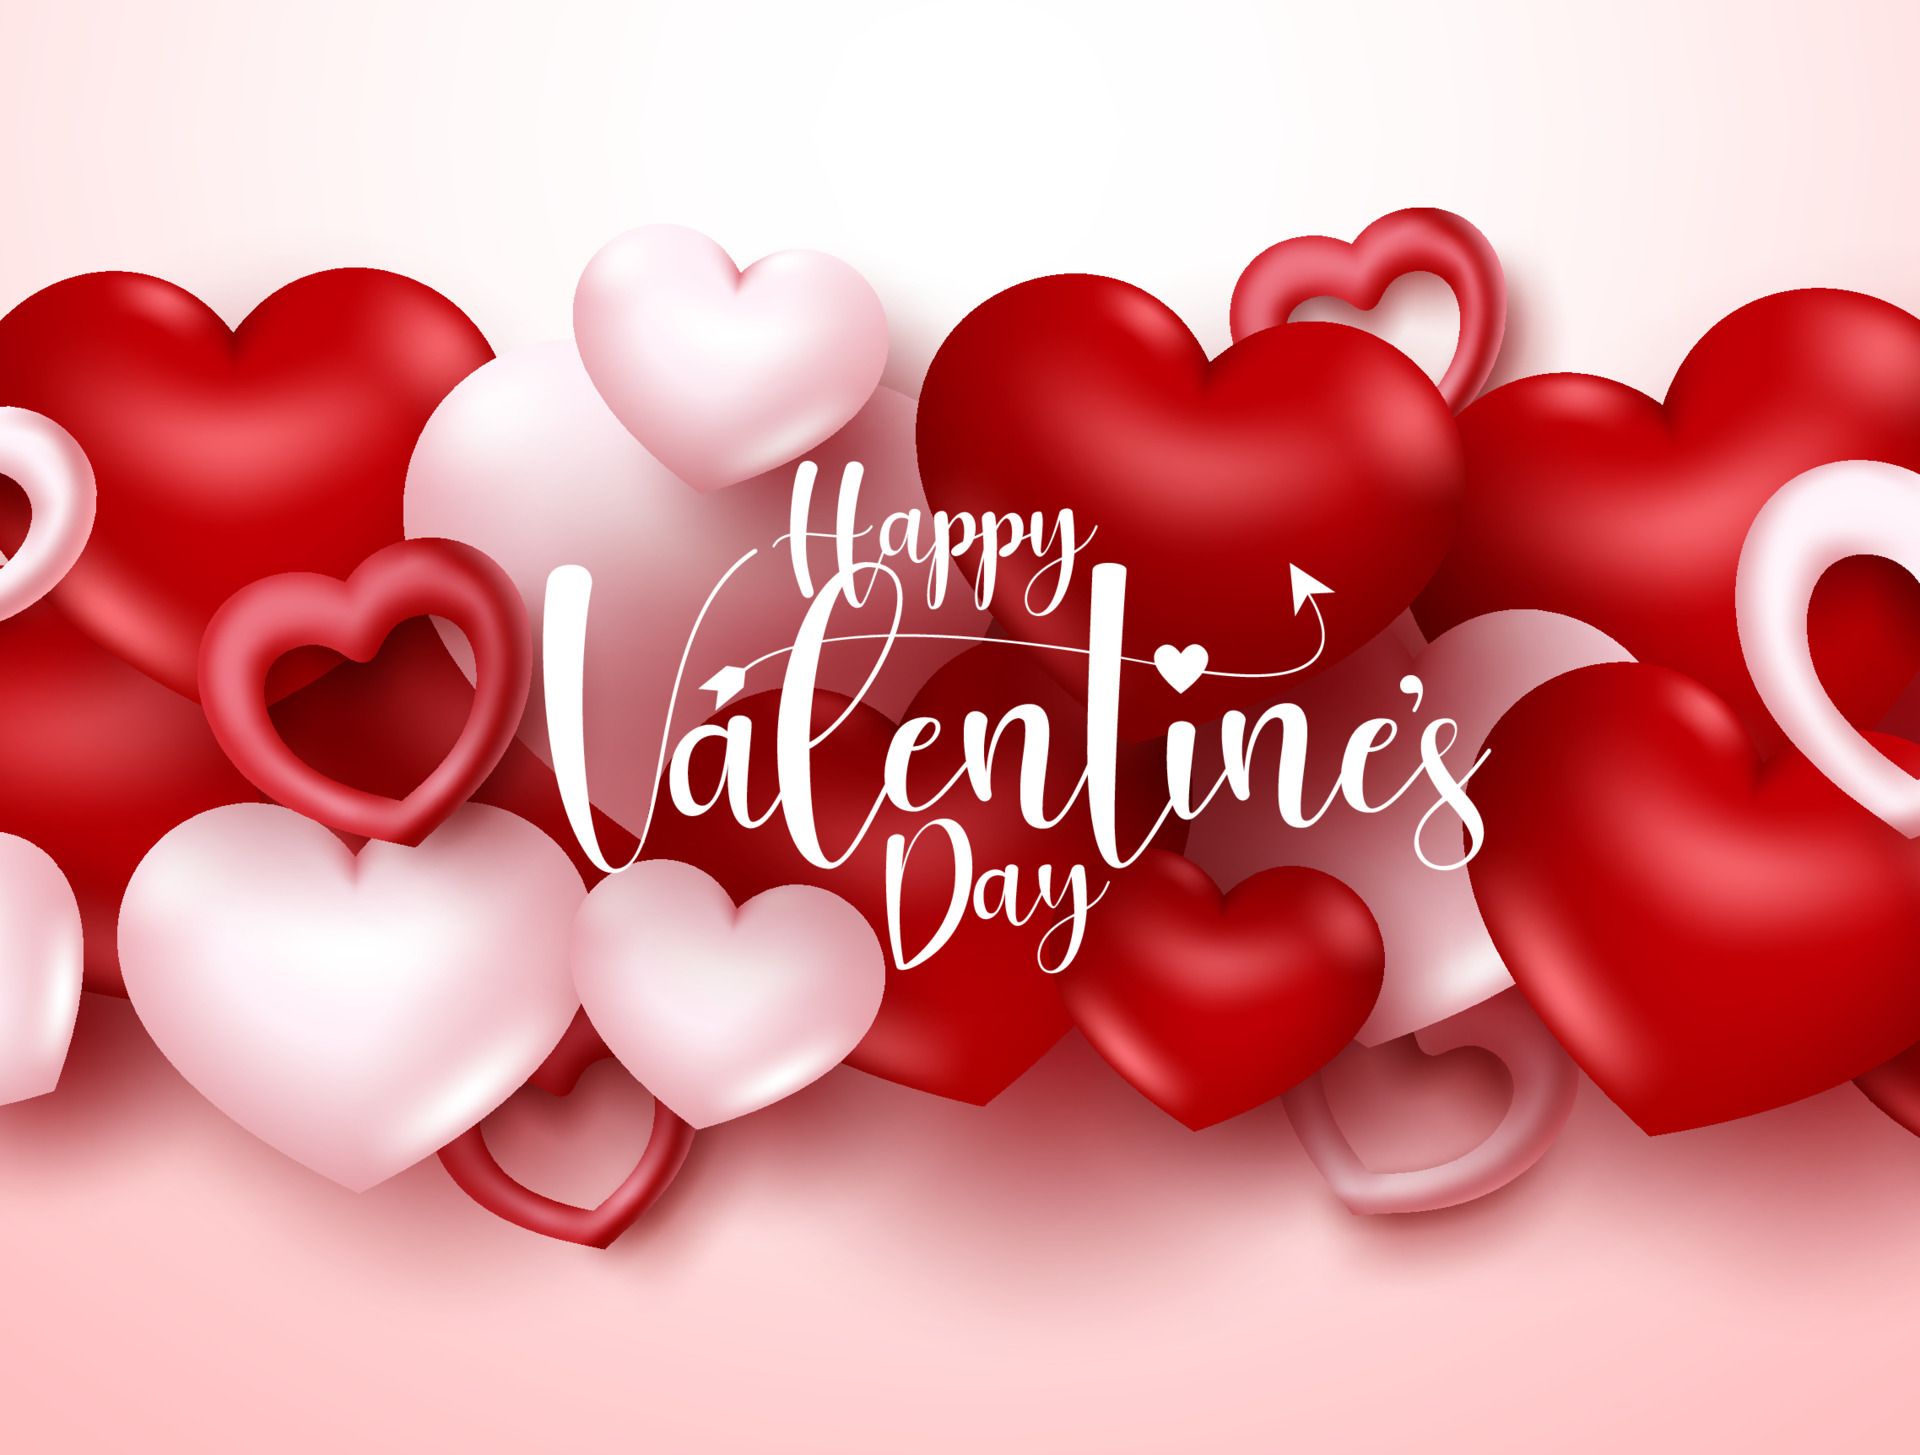 Happy Valentines Day 2022 Wishes, Valentines Day 2022 Image And Wallpaper HD. Happy valentines day, Happy valentine's day friend, Valentines day wishes